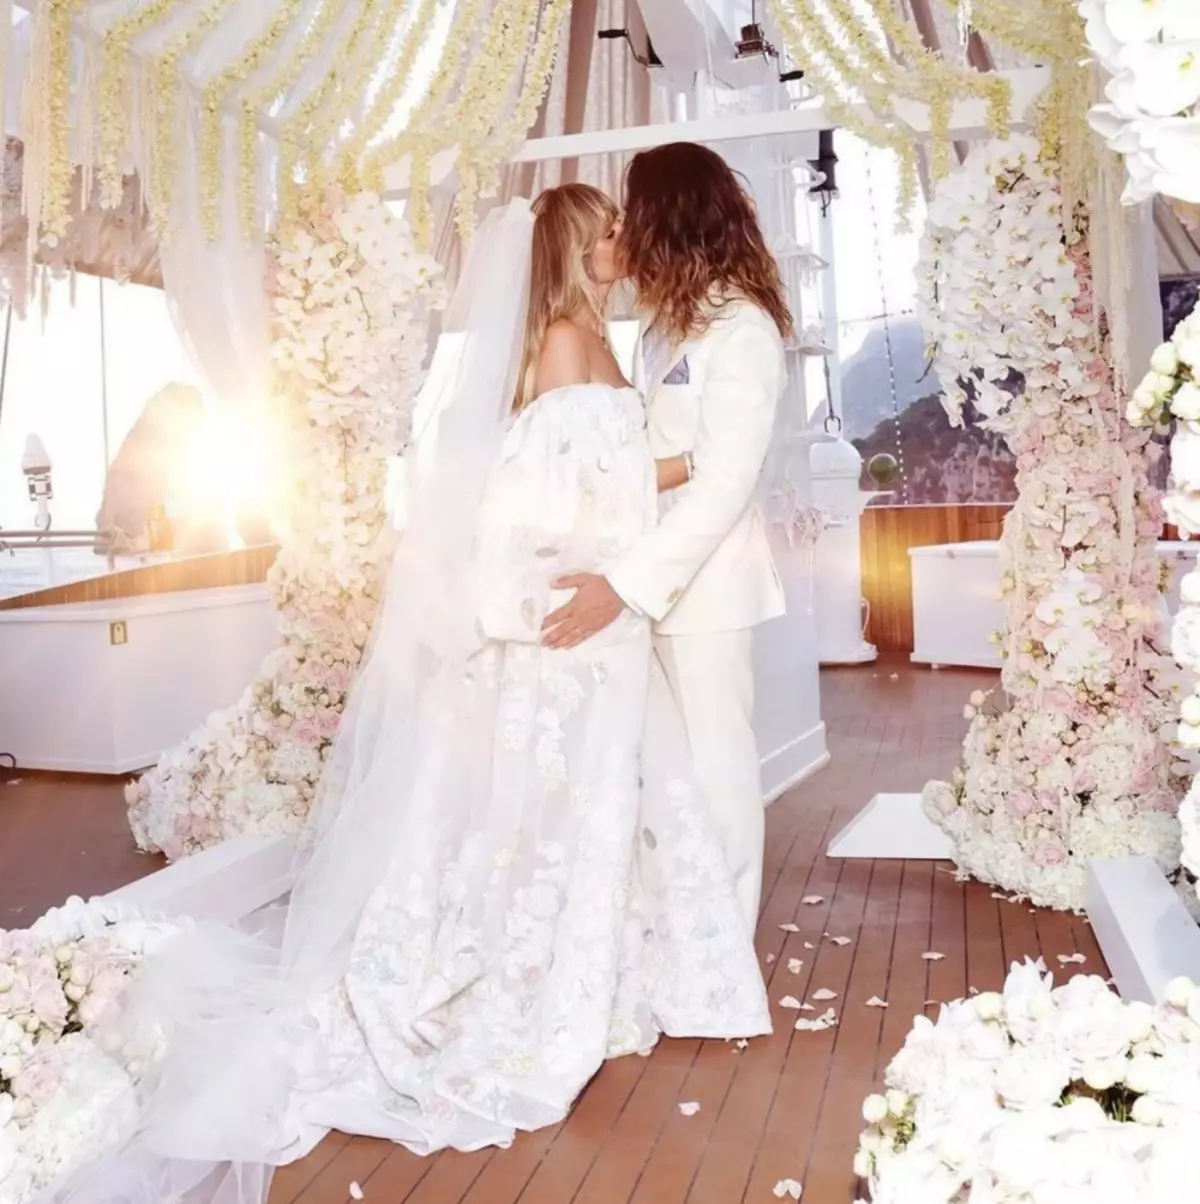 Heidi Klum Tom Kaulitz ilə evlilik haqqında danışdı: 